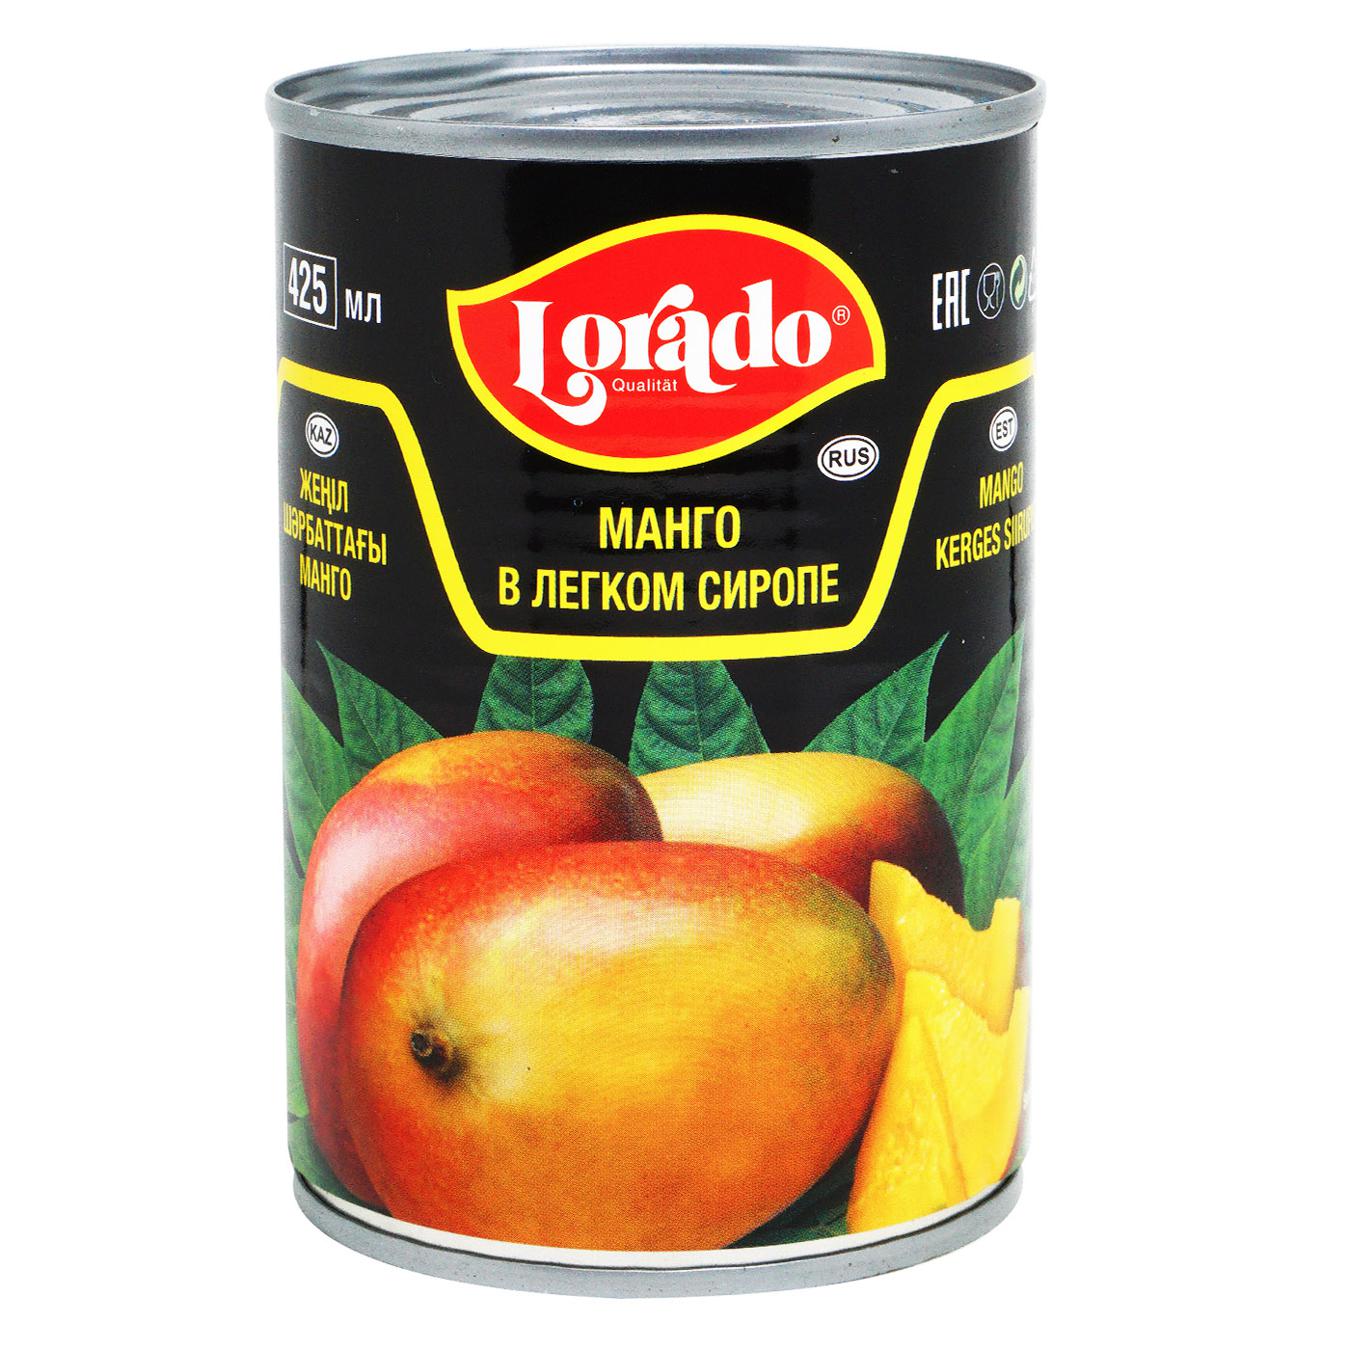 Манго Lorado консервированное в сиропе 425мл